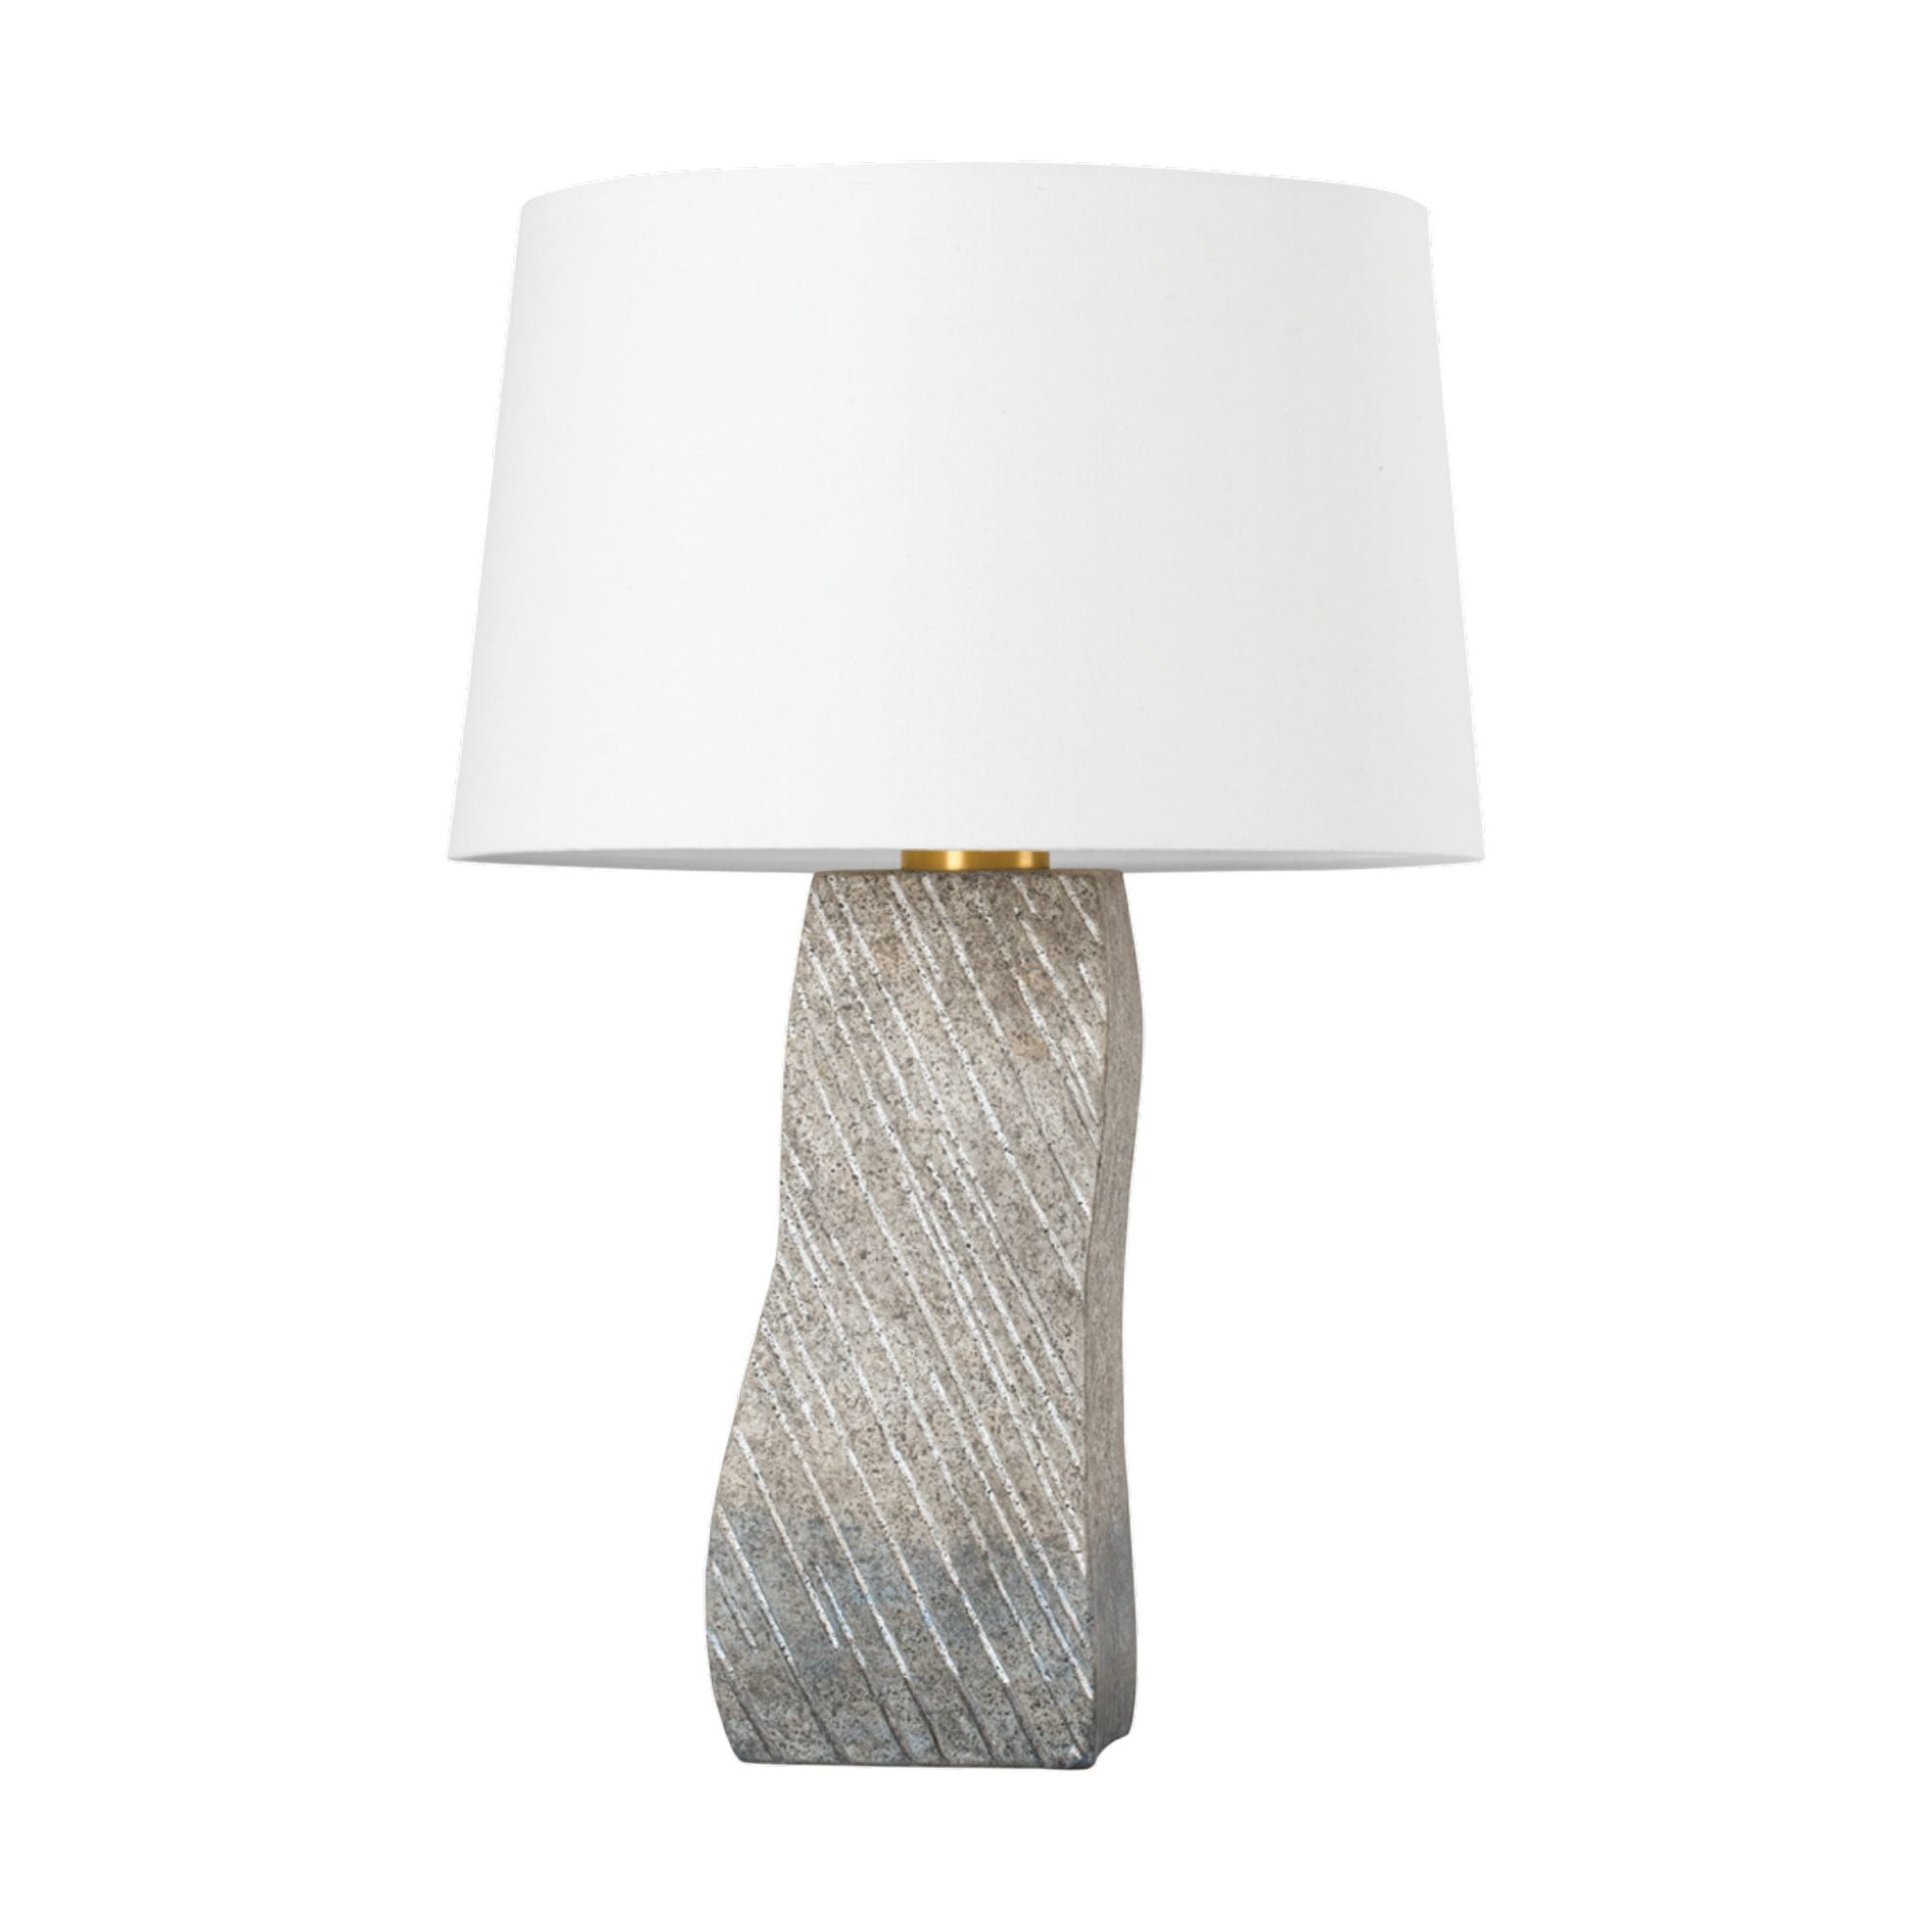 Raiden 1 Light Table Lamp in Aged Brass/ Ceramic Windswept White